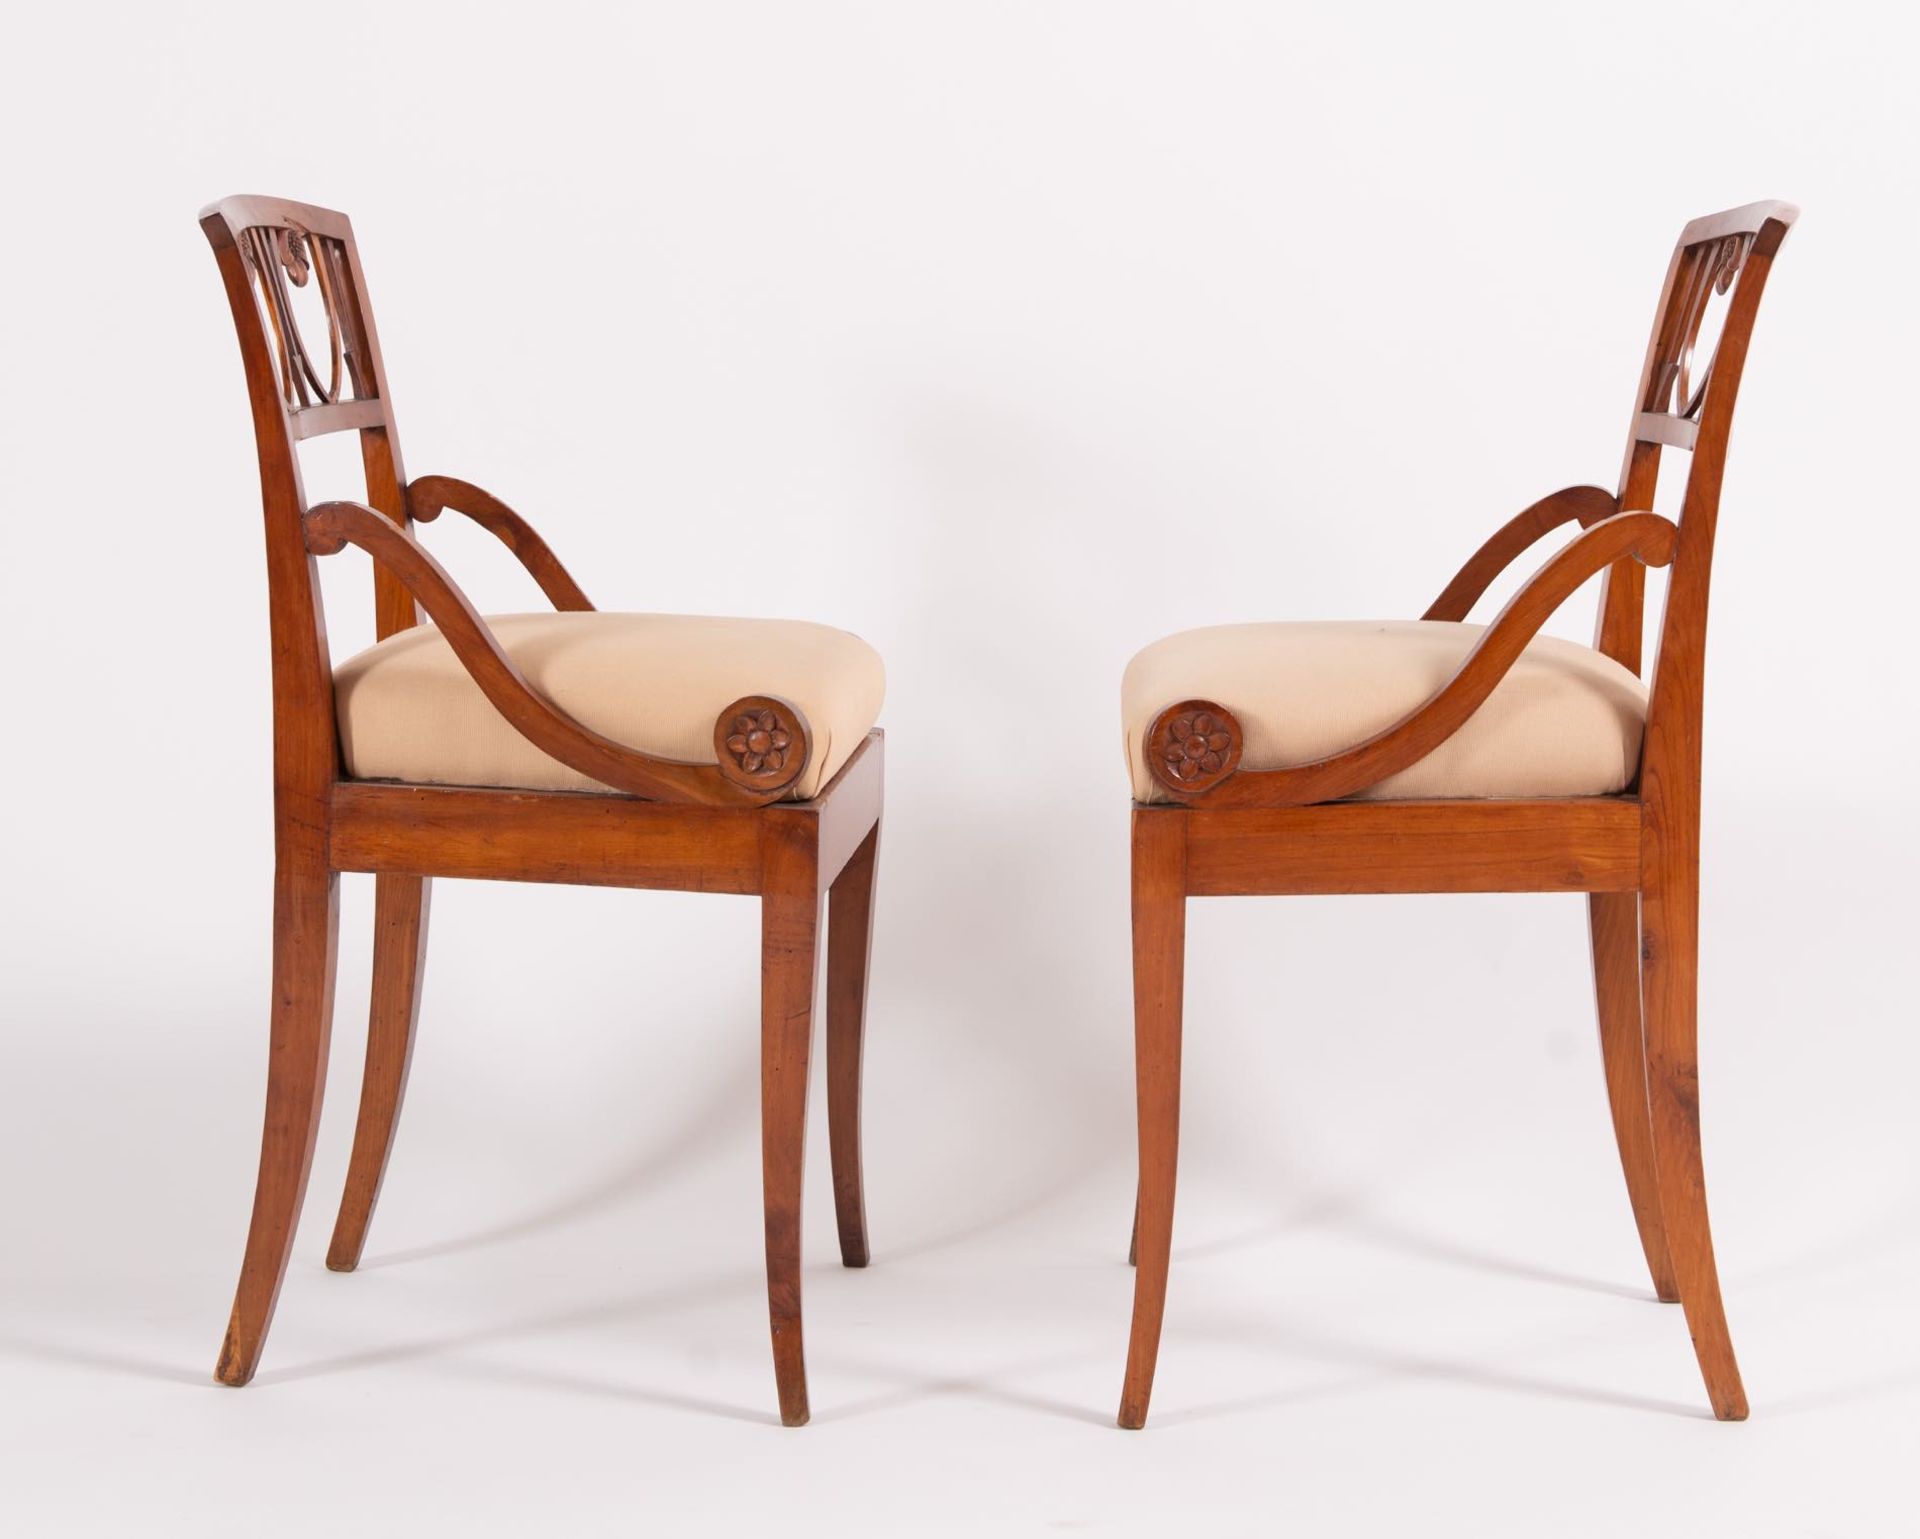 Coppia di sedie in massello di ciliegio, Veneto, prima metà del XIX secolo. - Image 3 of 4